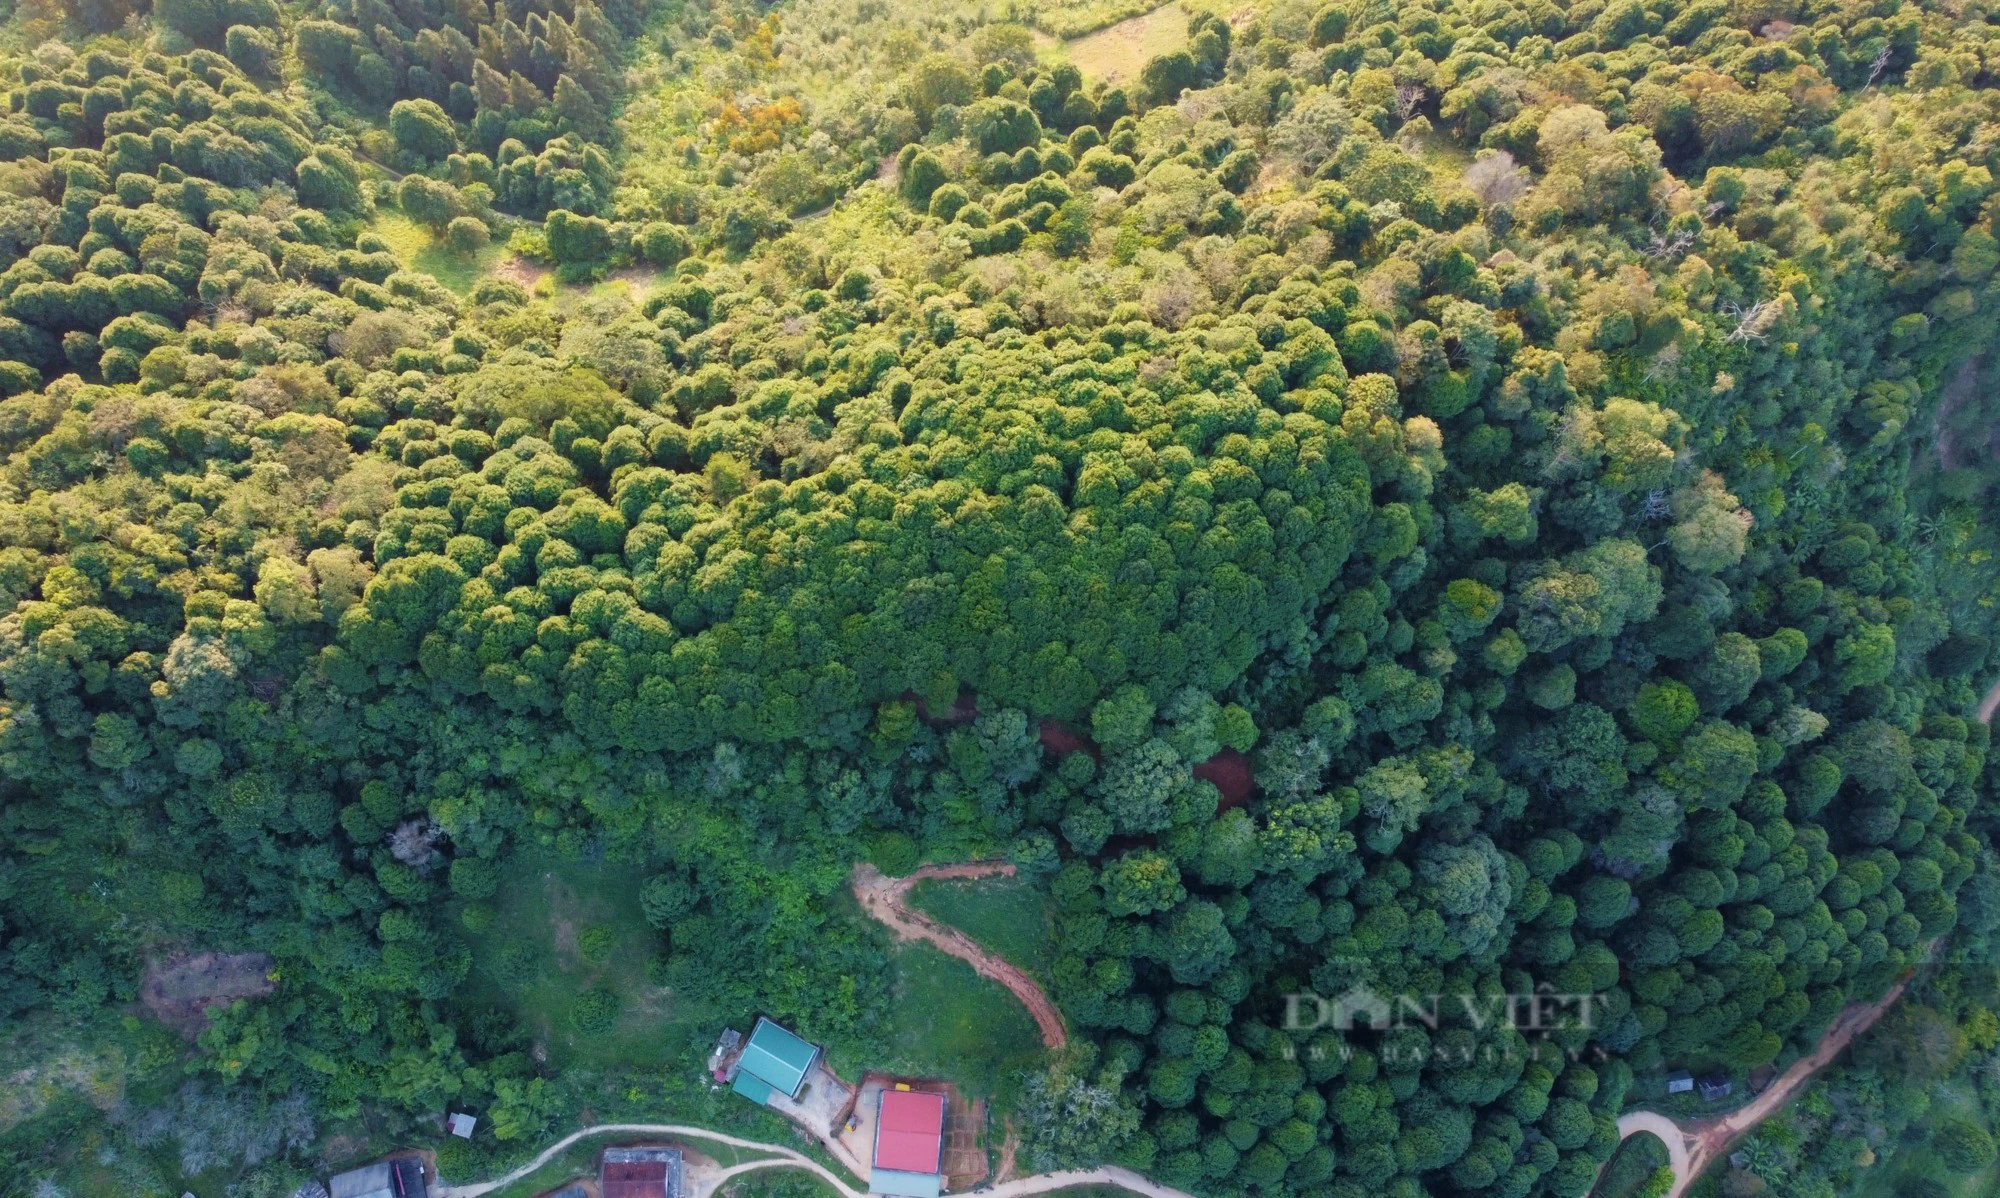 Chuyện đại gia đình phủ xanh dãy Pu Lon bằng cây quý, tạo nên những cánh rừng đẹp như phim - Ảnh 1.